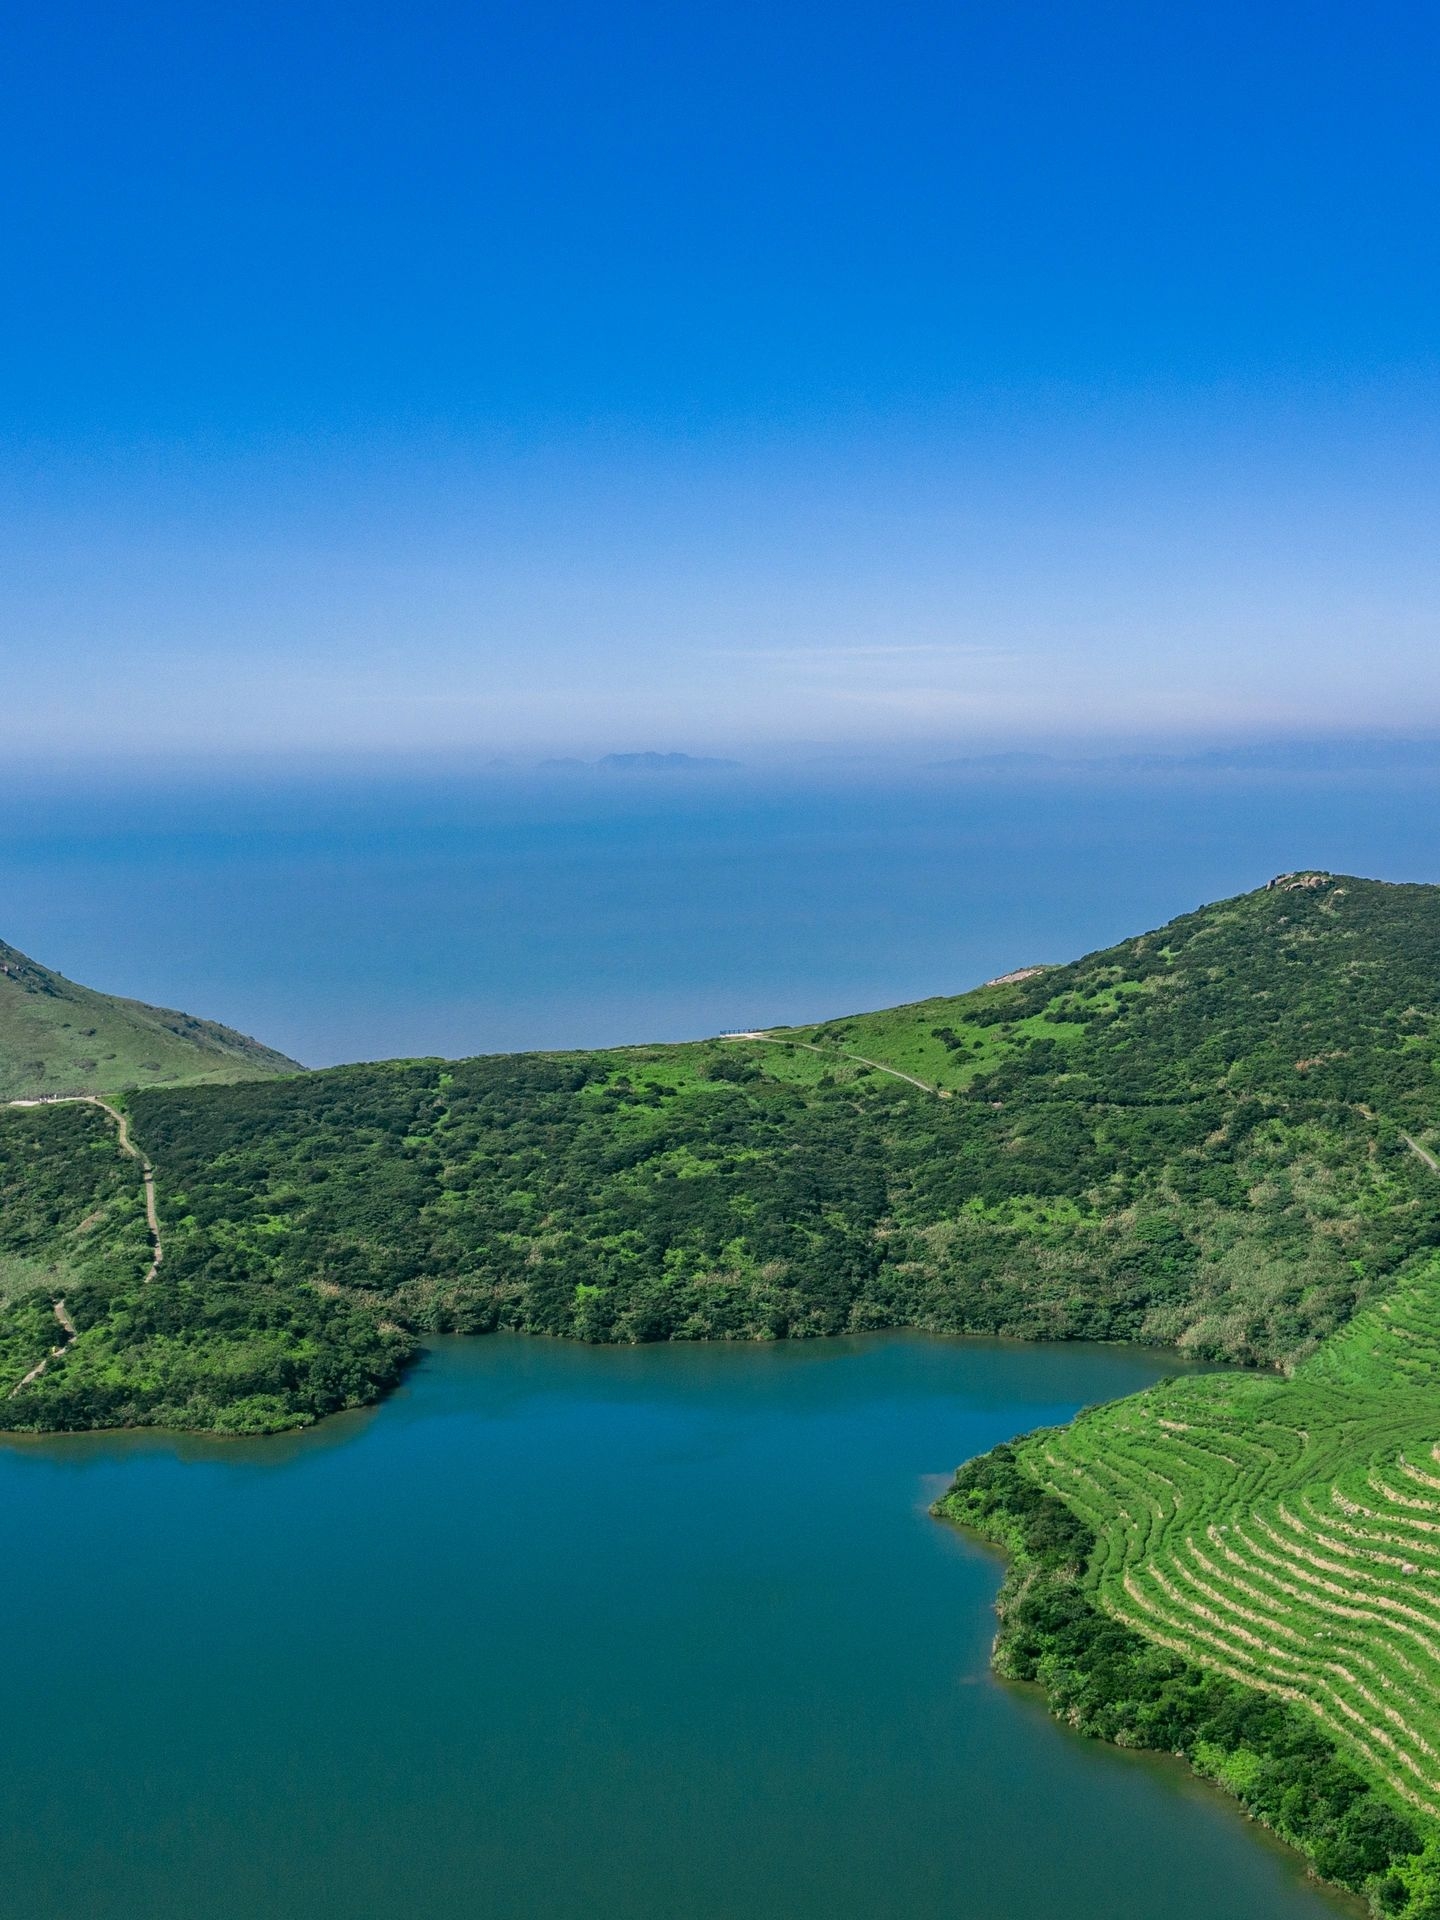 央视曾两次到岛拍摄，获评中国最美十大岛屿——嵛山岛